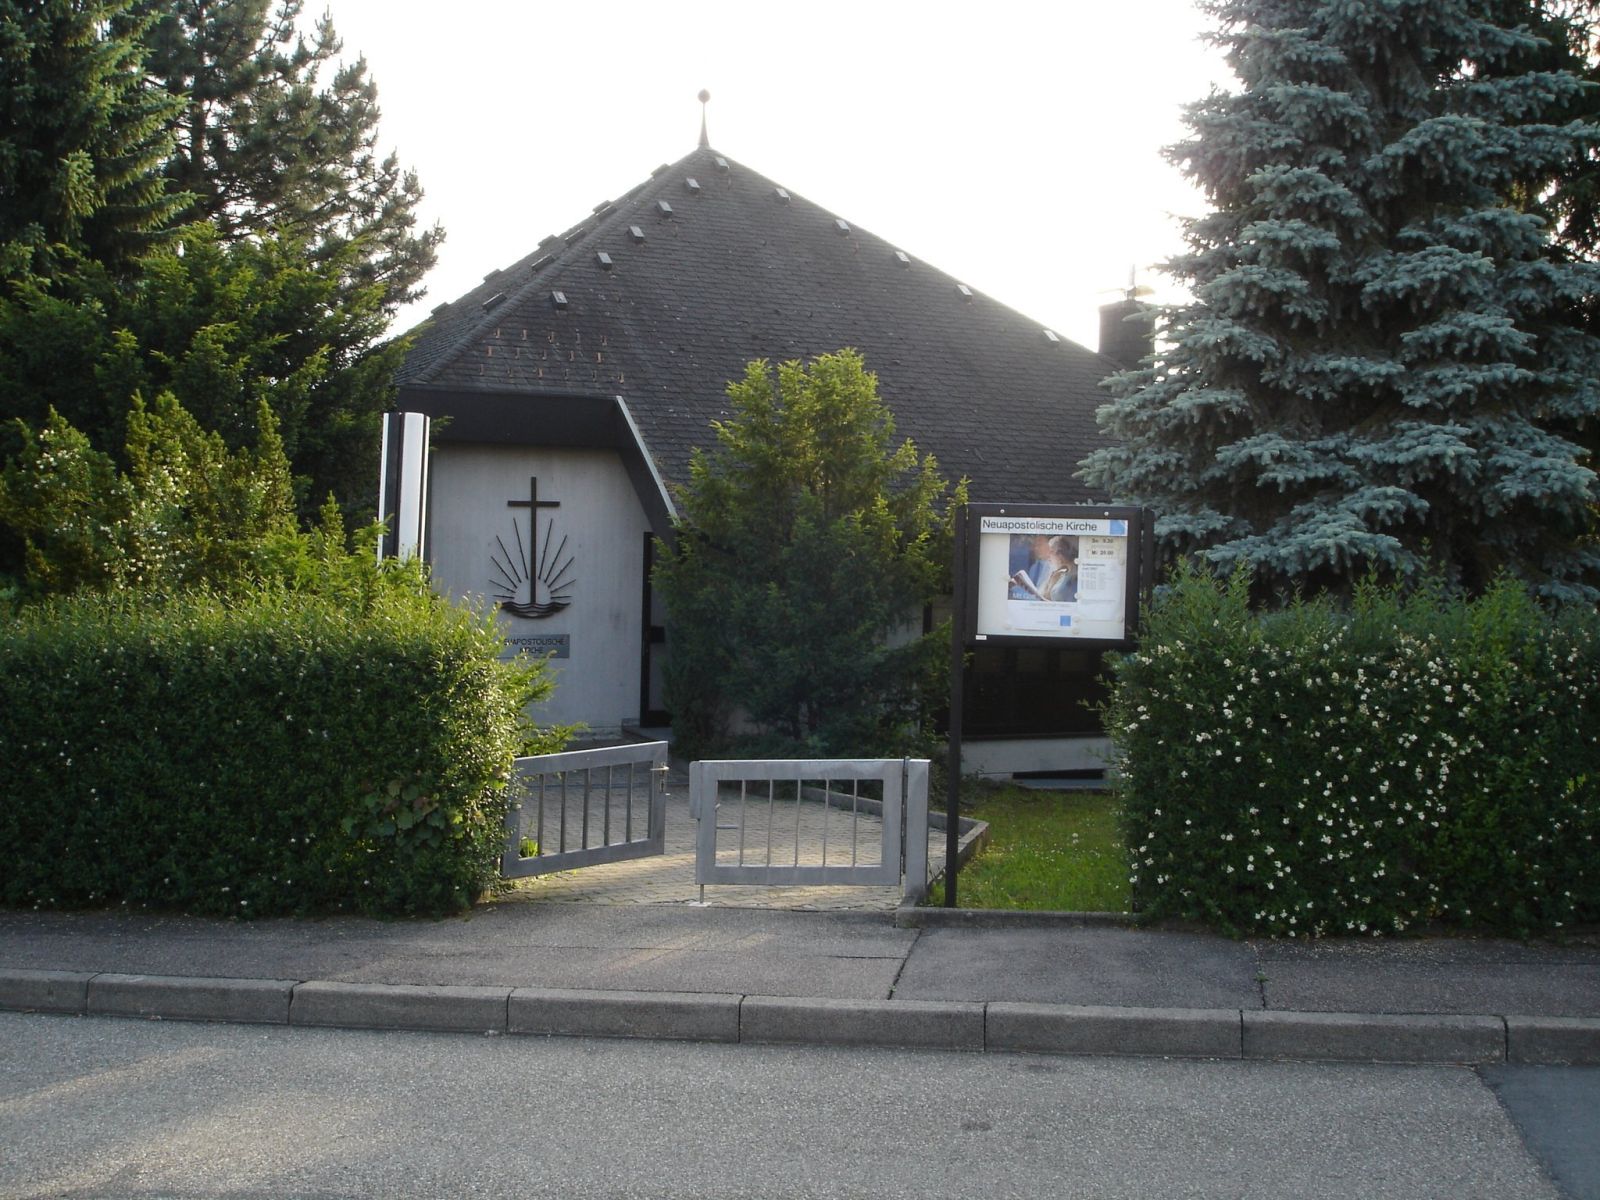  Neuapostolische Kirche in Schopfloch - das Bild wird mit einem Klick vergrößert 